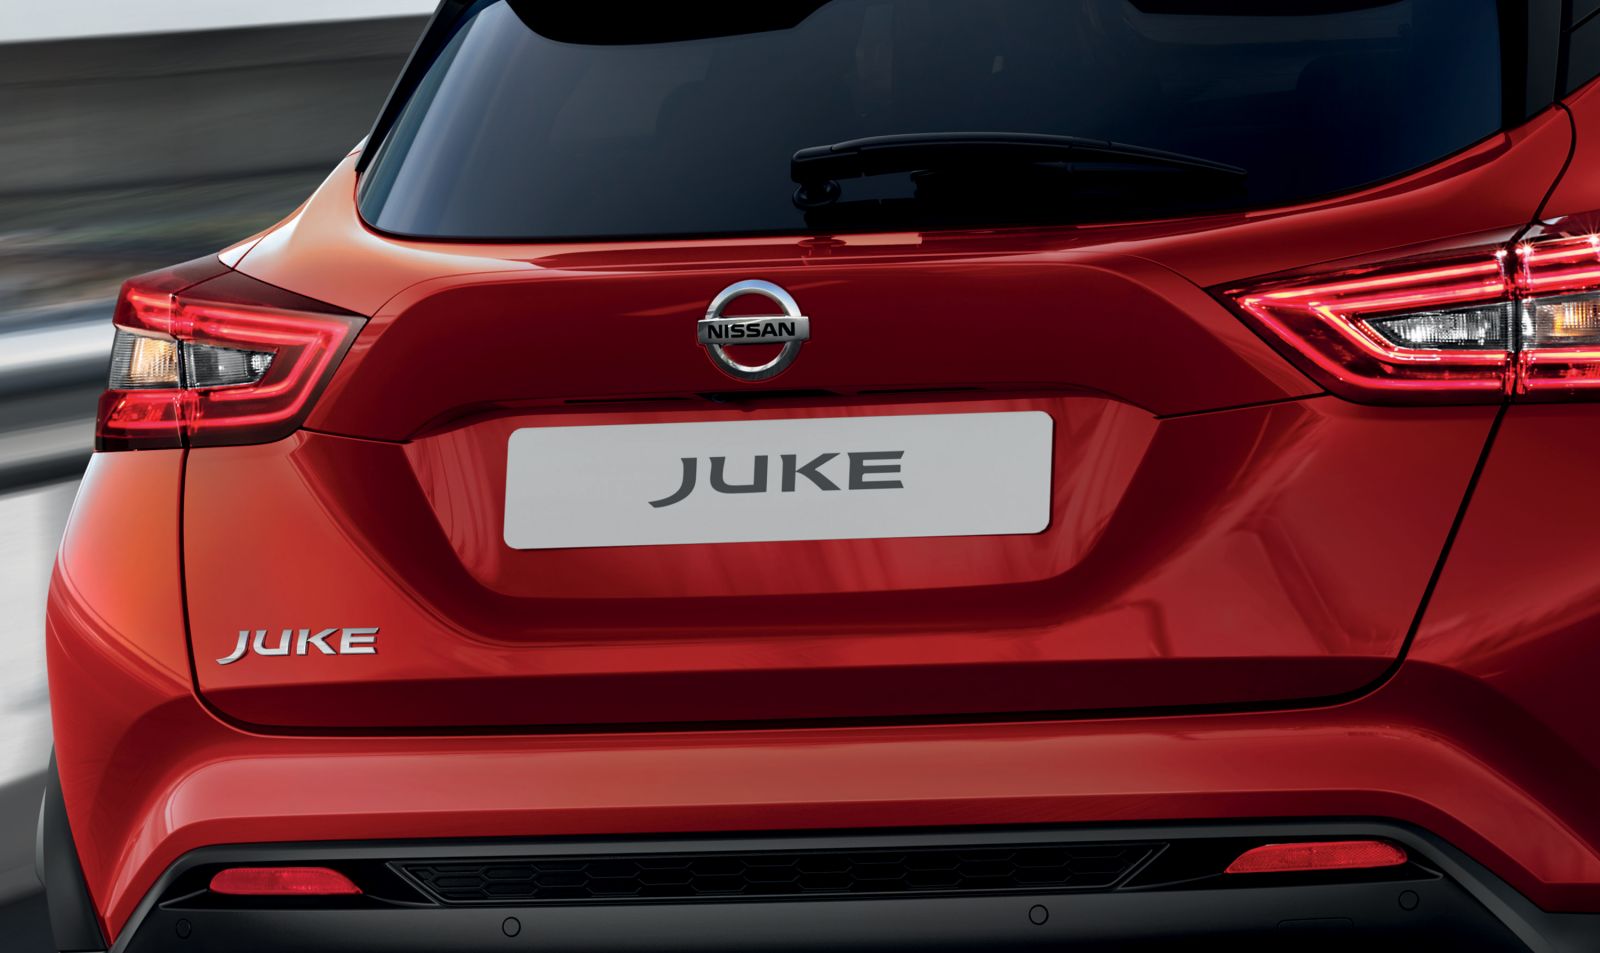 Tải hình ảnh xe Nissan Juke chất lượng cao 12